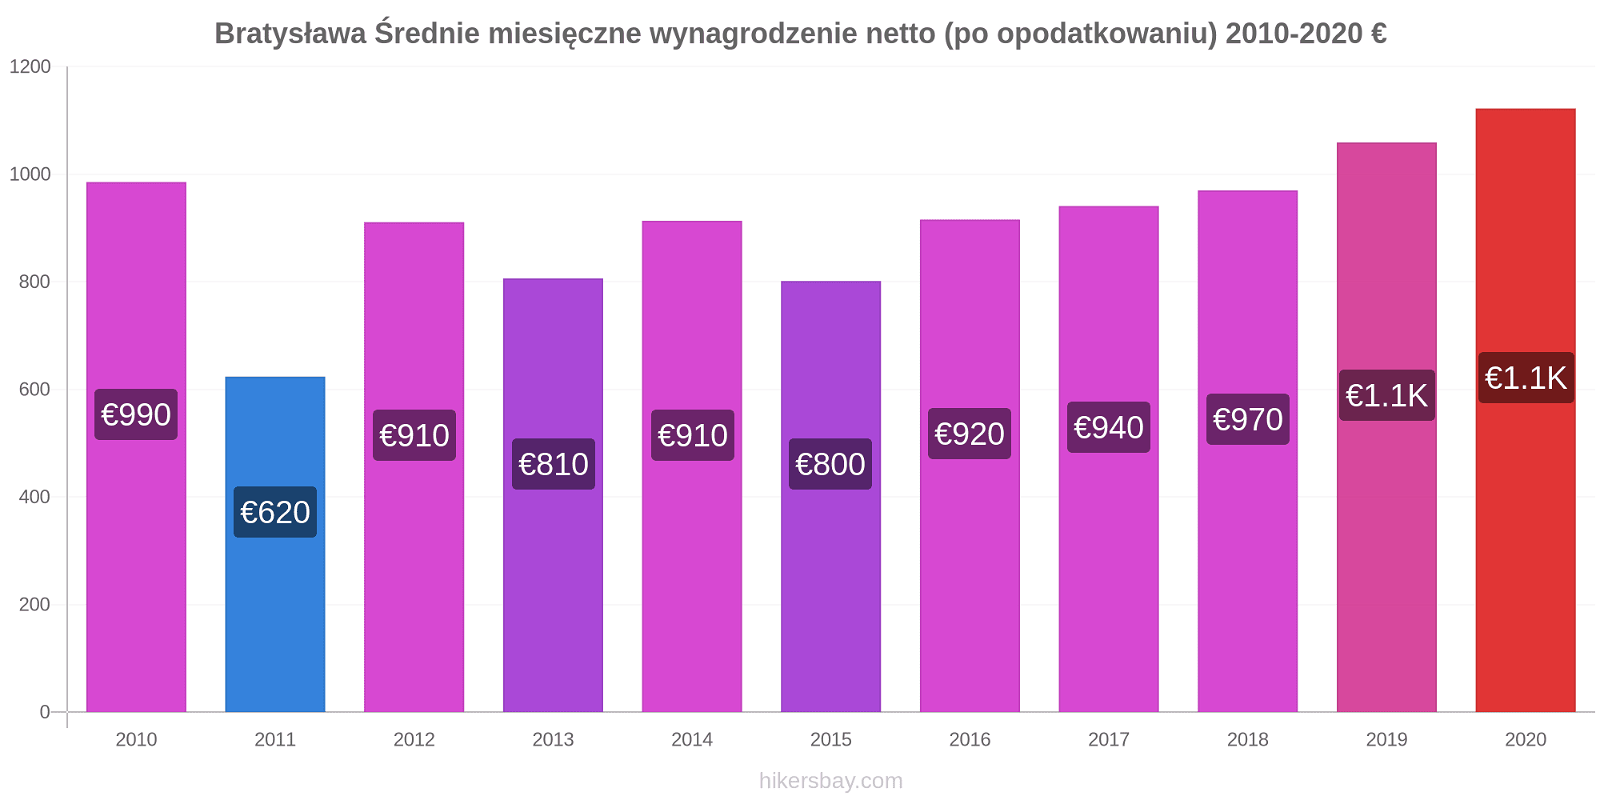 Bratysława zmiany cen Średnie miesięczne wynagrodzenie netto (po opodatkowaniu) hikersbay.com